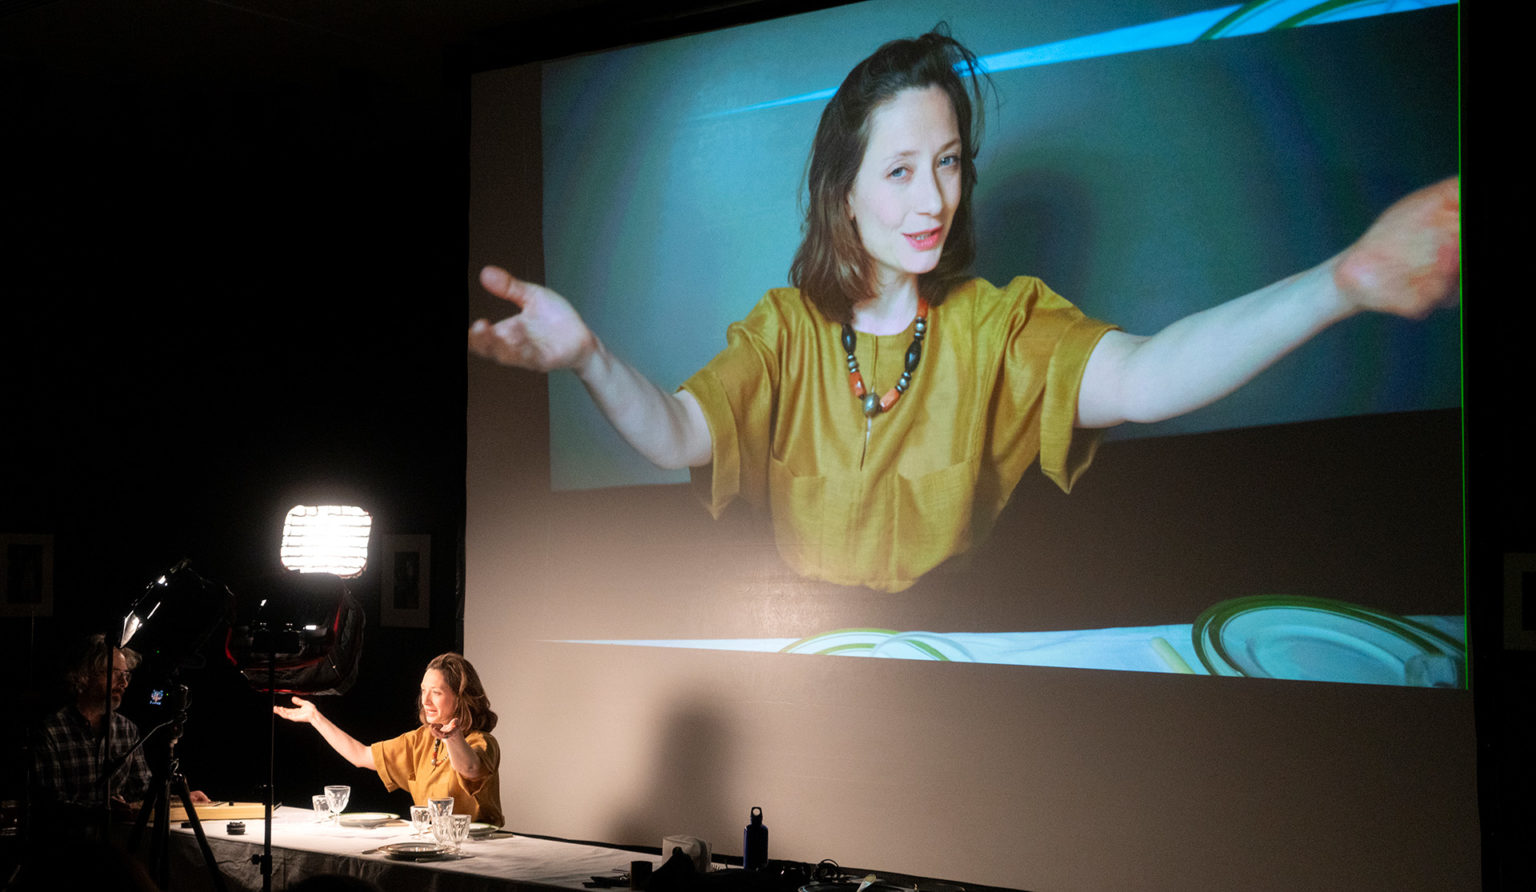 Ariane Loze en pleine performance, devant une grande table. Son image est projetée sur un écran géant. Elle porte un haut jaune.